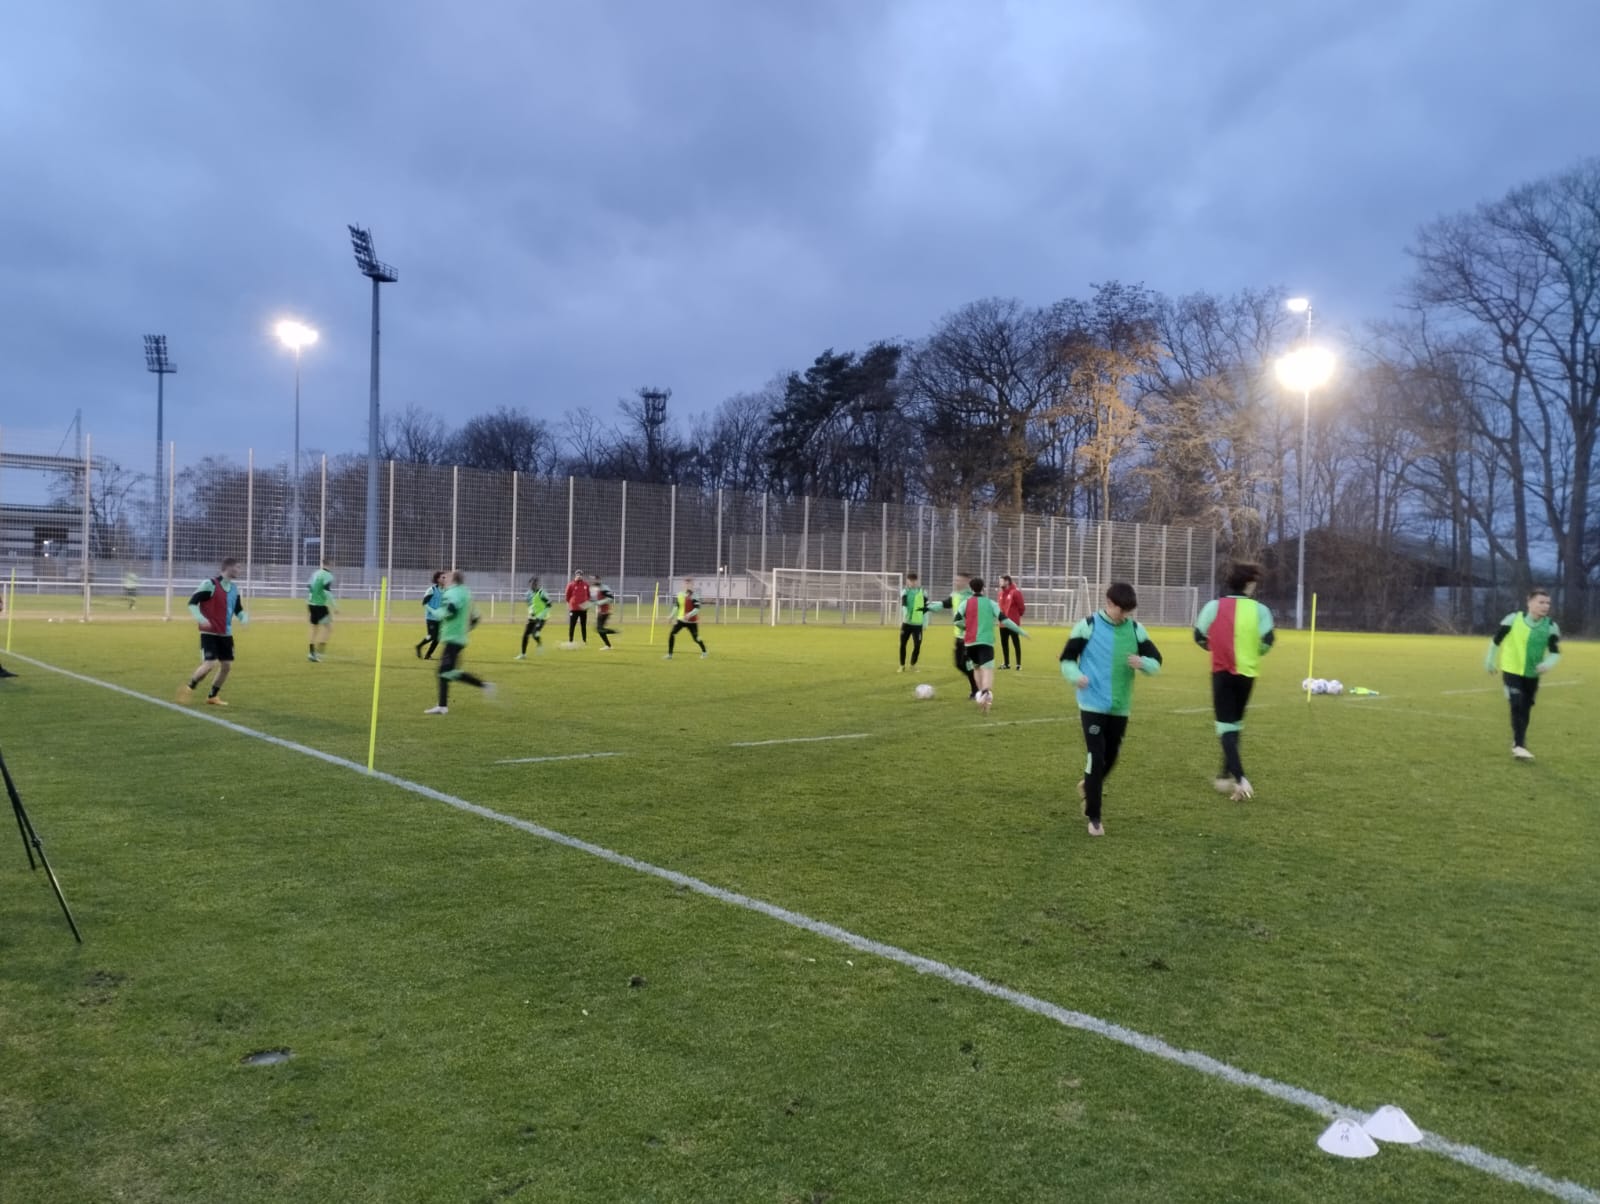 Regionales Trainer-Seminar bei Hannover 96 - „Trainieren im Team - durch Scanning das Spiel zwischen den Linien optimieren“